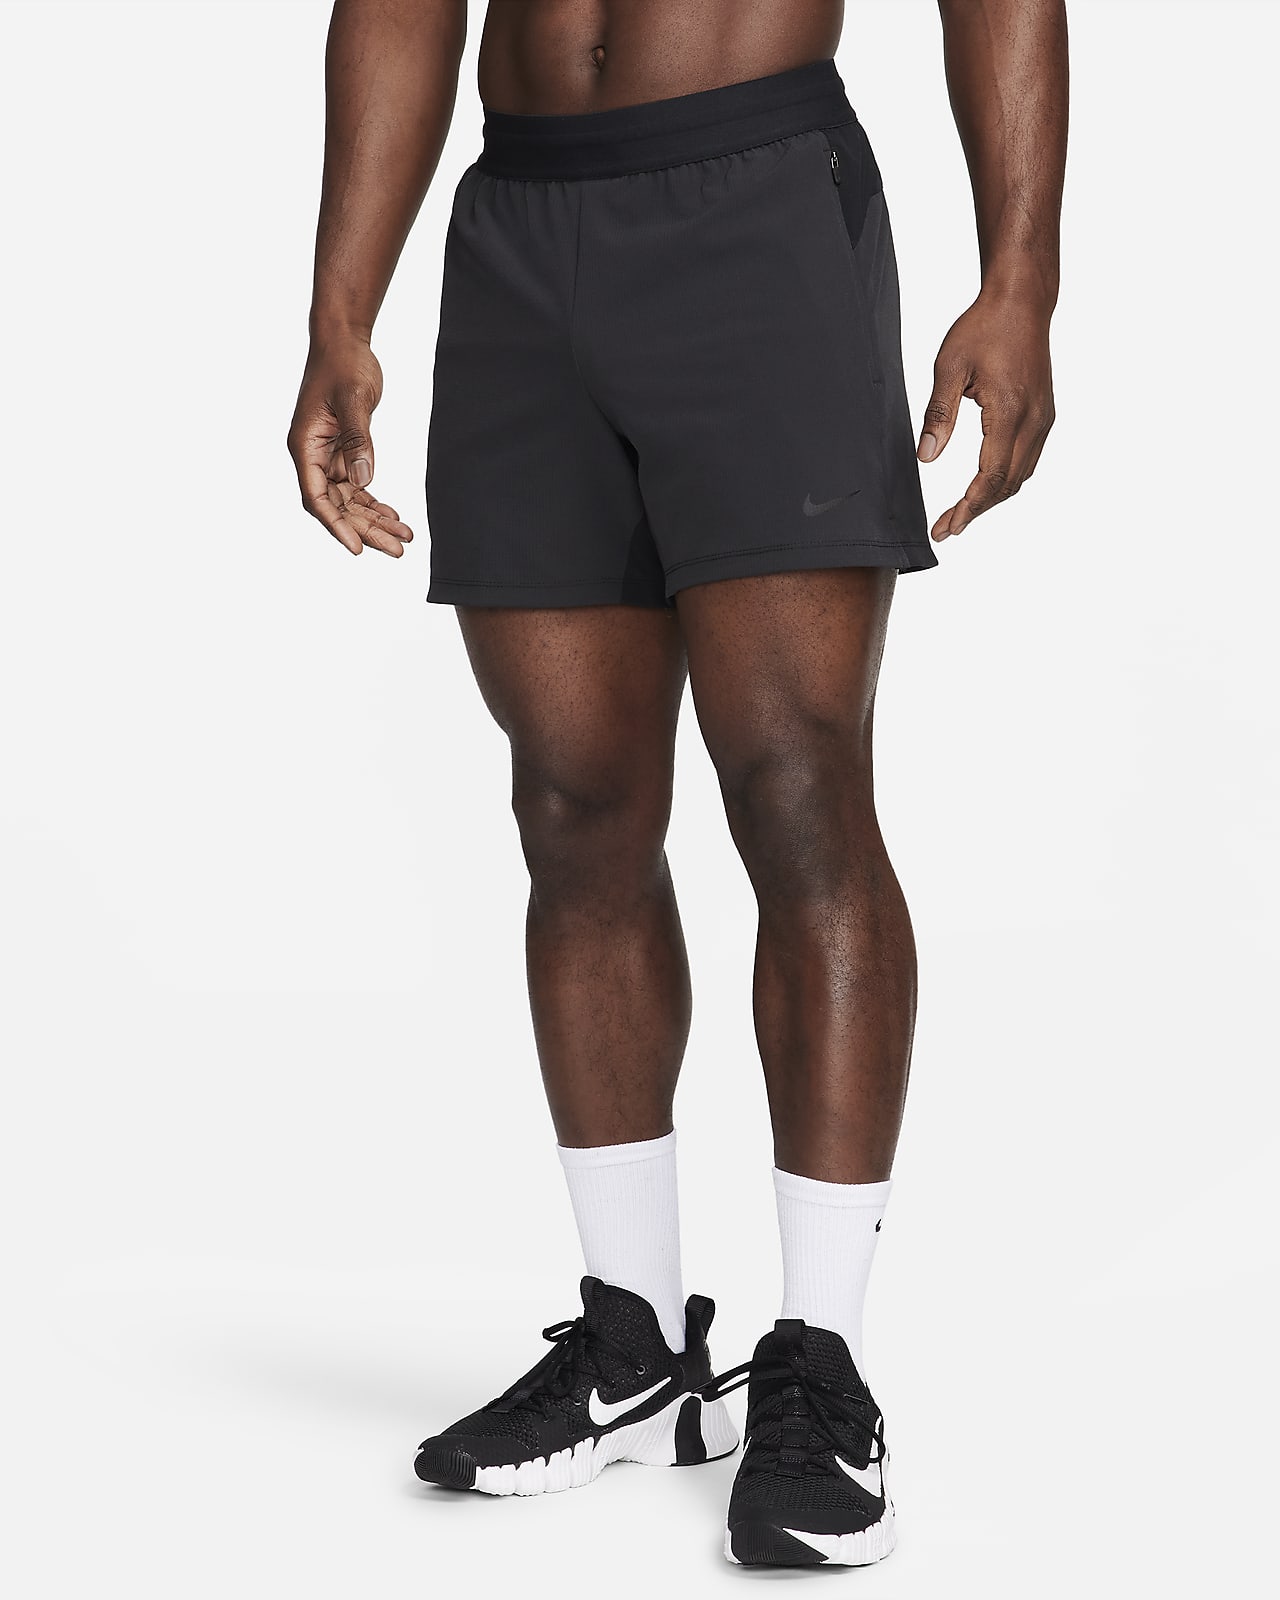 Nike Flex Rep Pantalón corto deportivo Dri-FIT de 13 cm sin forro - Hombre